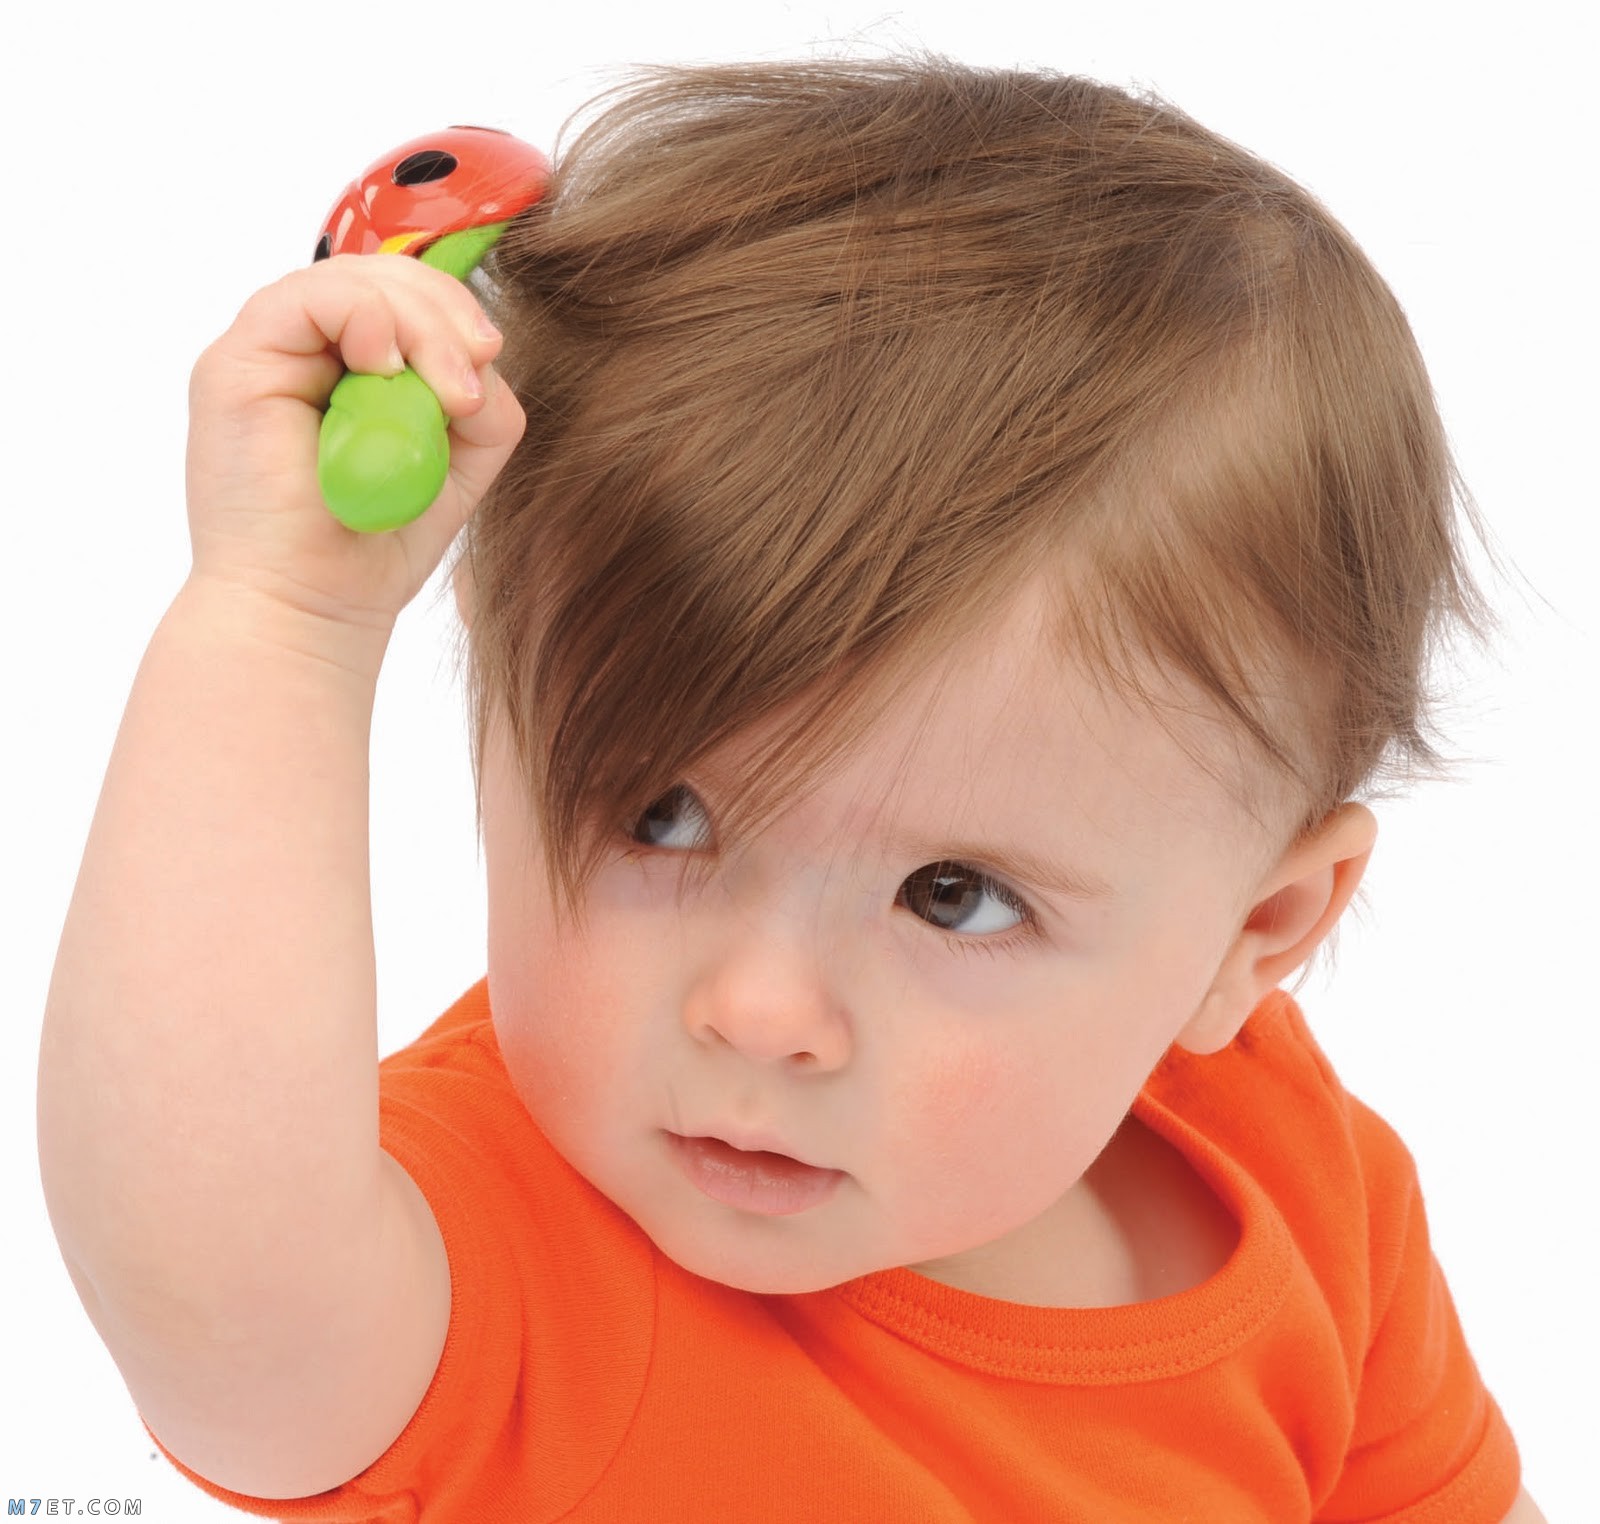 ودود إنكمش فوضوي  كيفية تنعيم شعر الاطفال وأفضل 3 زيوت لتنعيم شعر الأطفال - موقع مُحيط